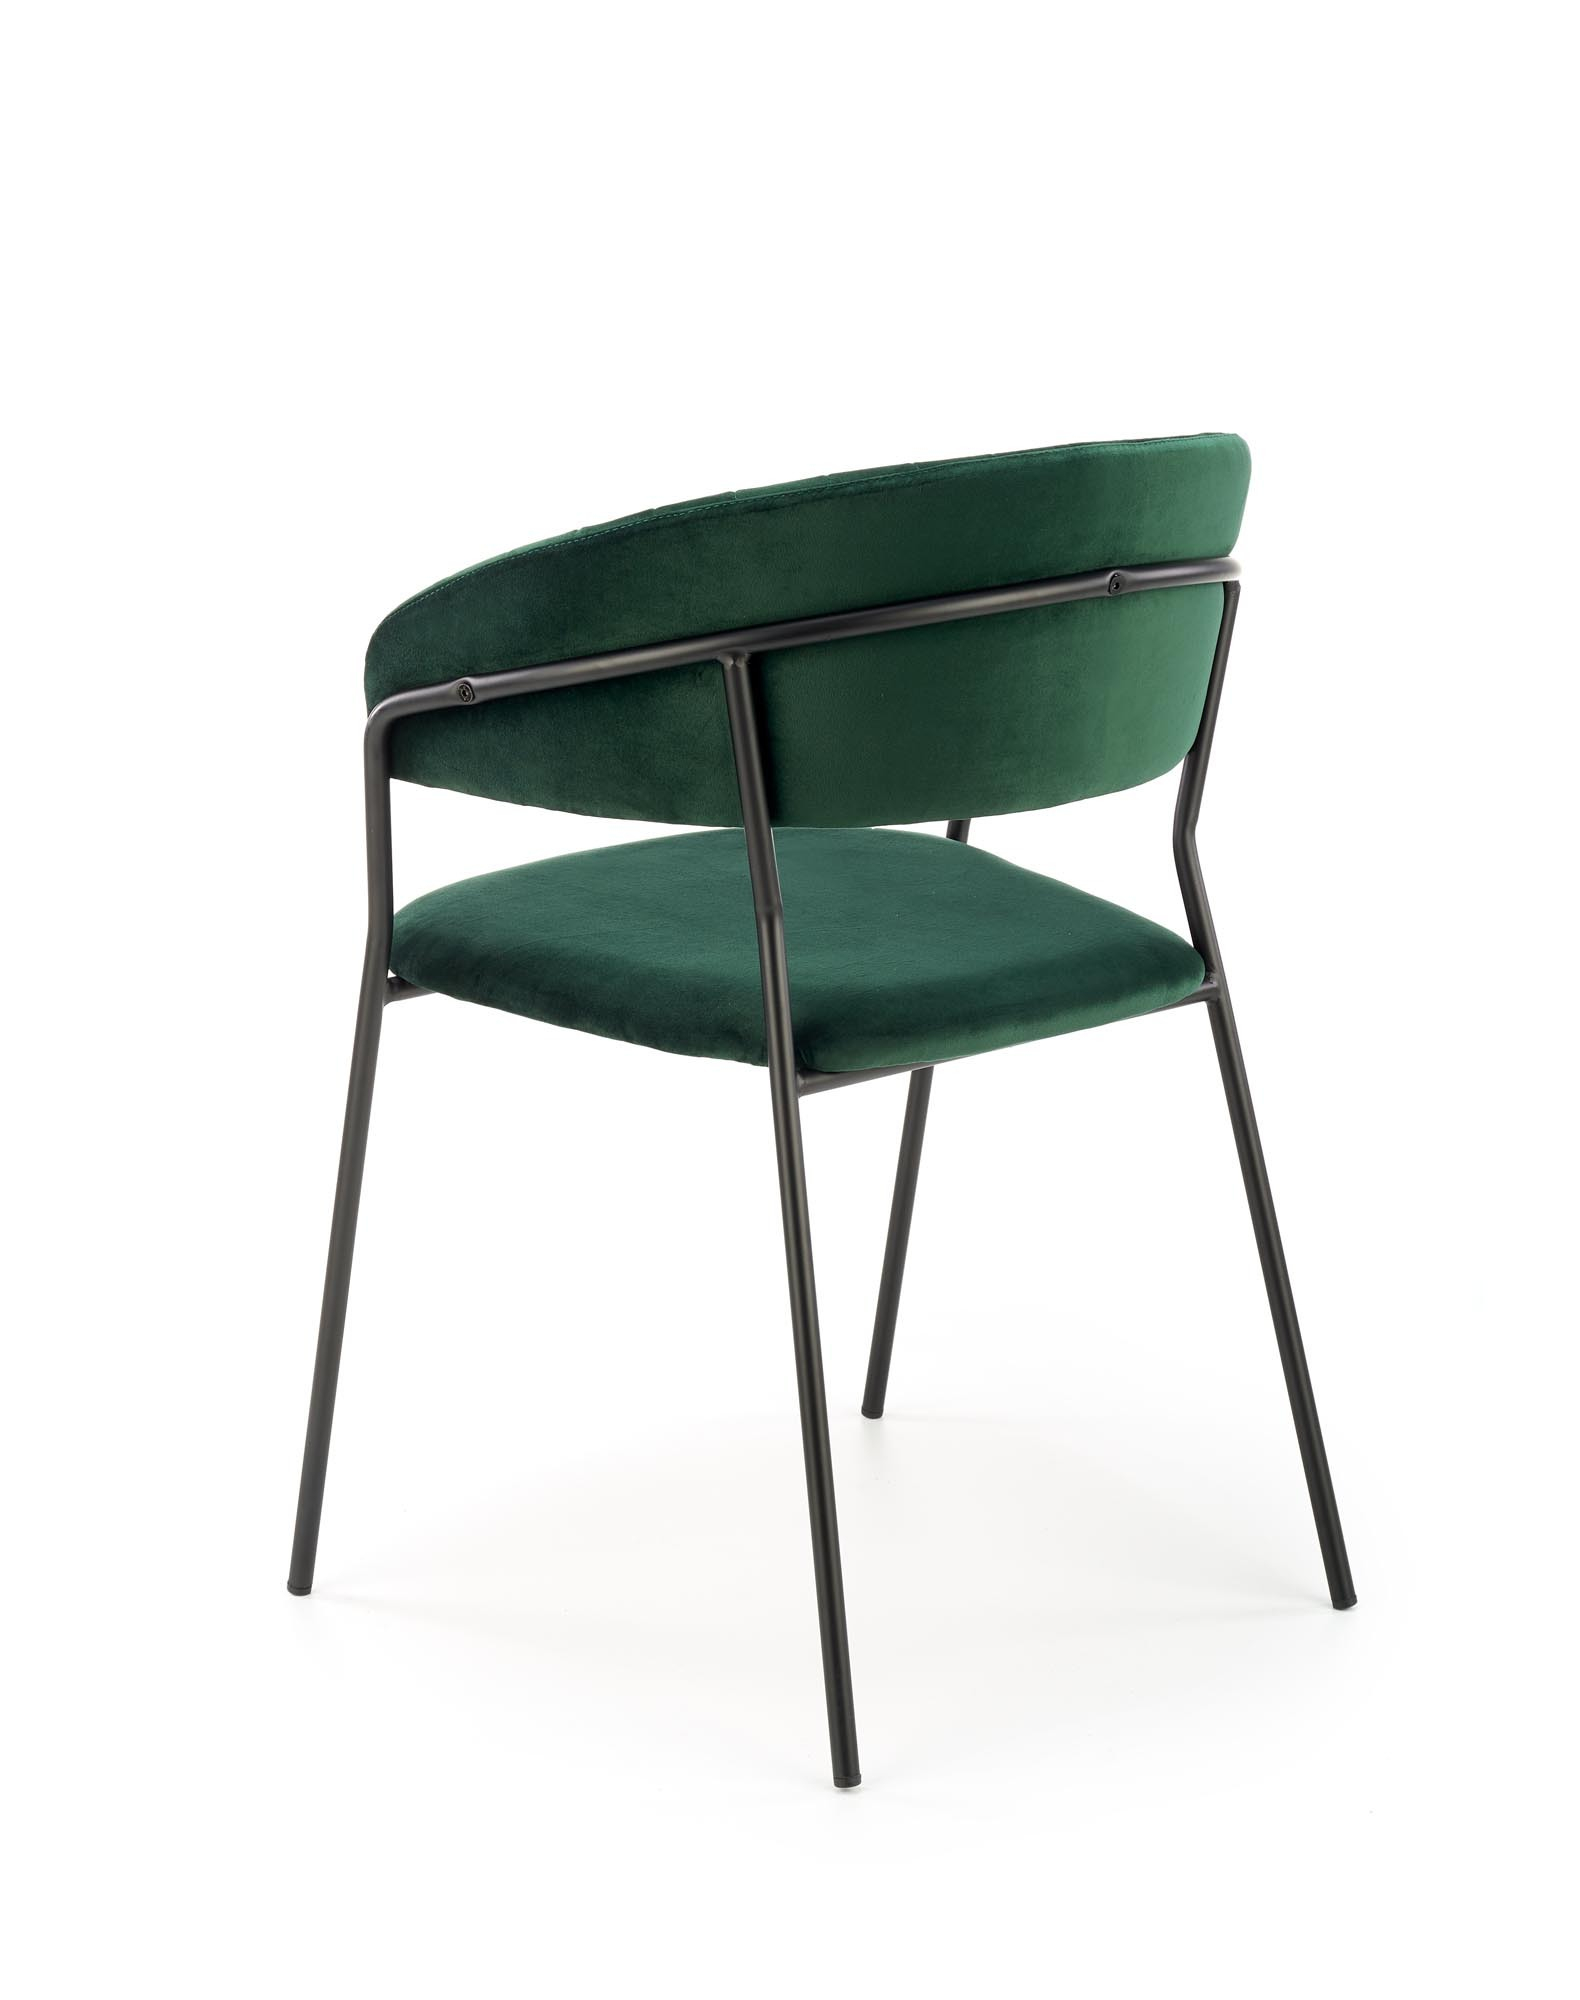 K426 krzesło ciemny zielony